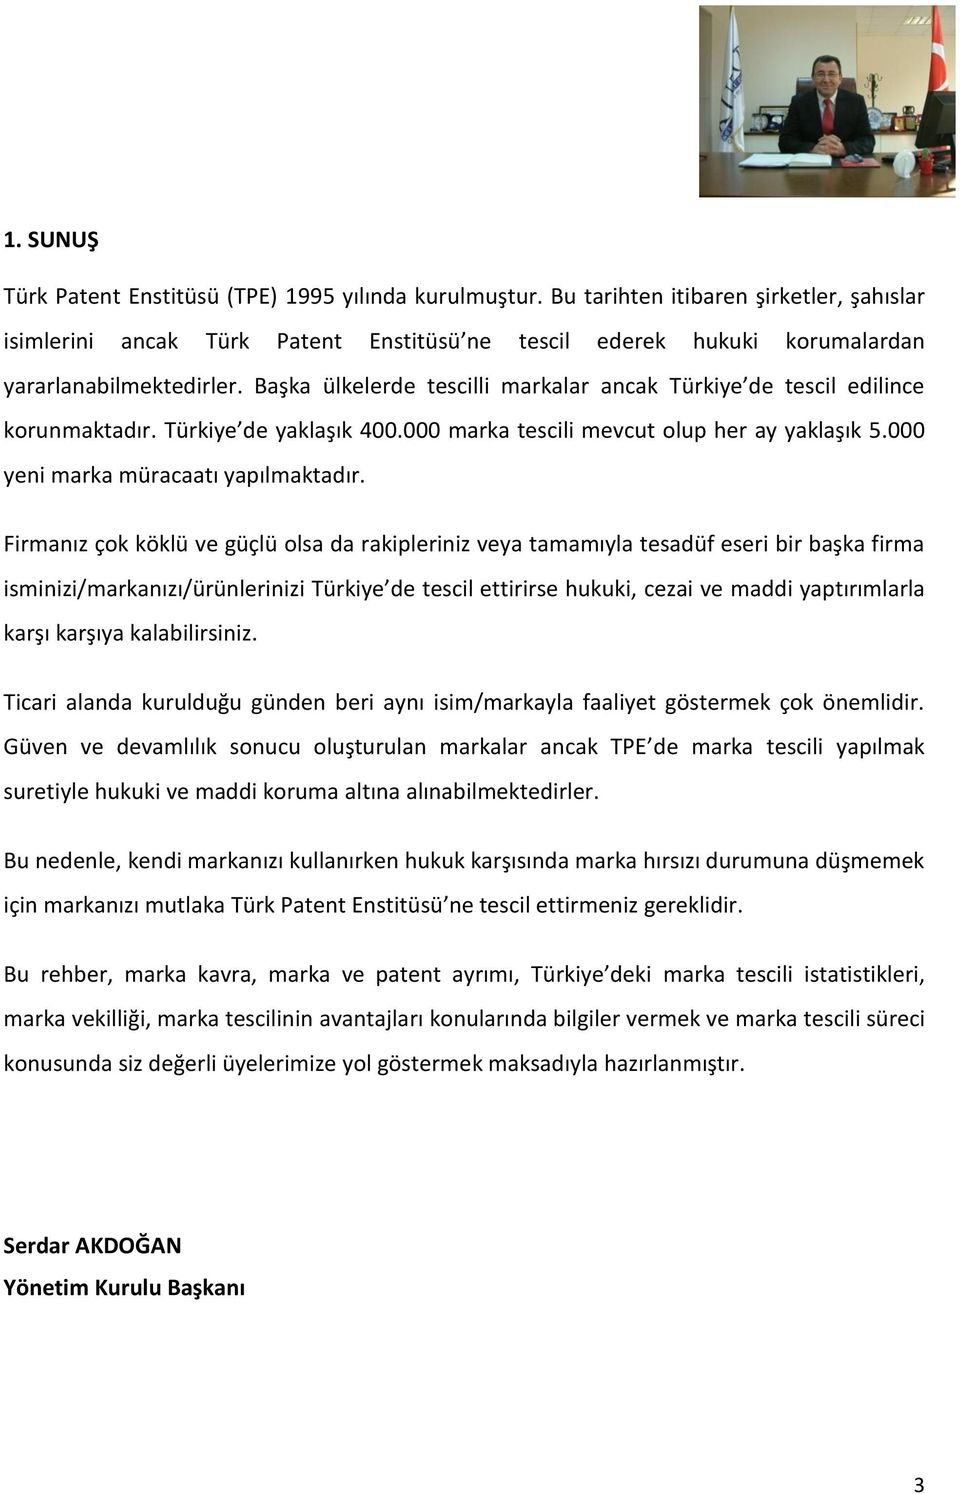 Başka ülkelerde tescilli markalar ancak Türkiye de tescil edilince korunmaktadır. Türkiye de yaklaşık 400.000 marka tescili mevcut olup her ay yaklaşık 5.000 yeni marka müracaatı yapılmaktadır.